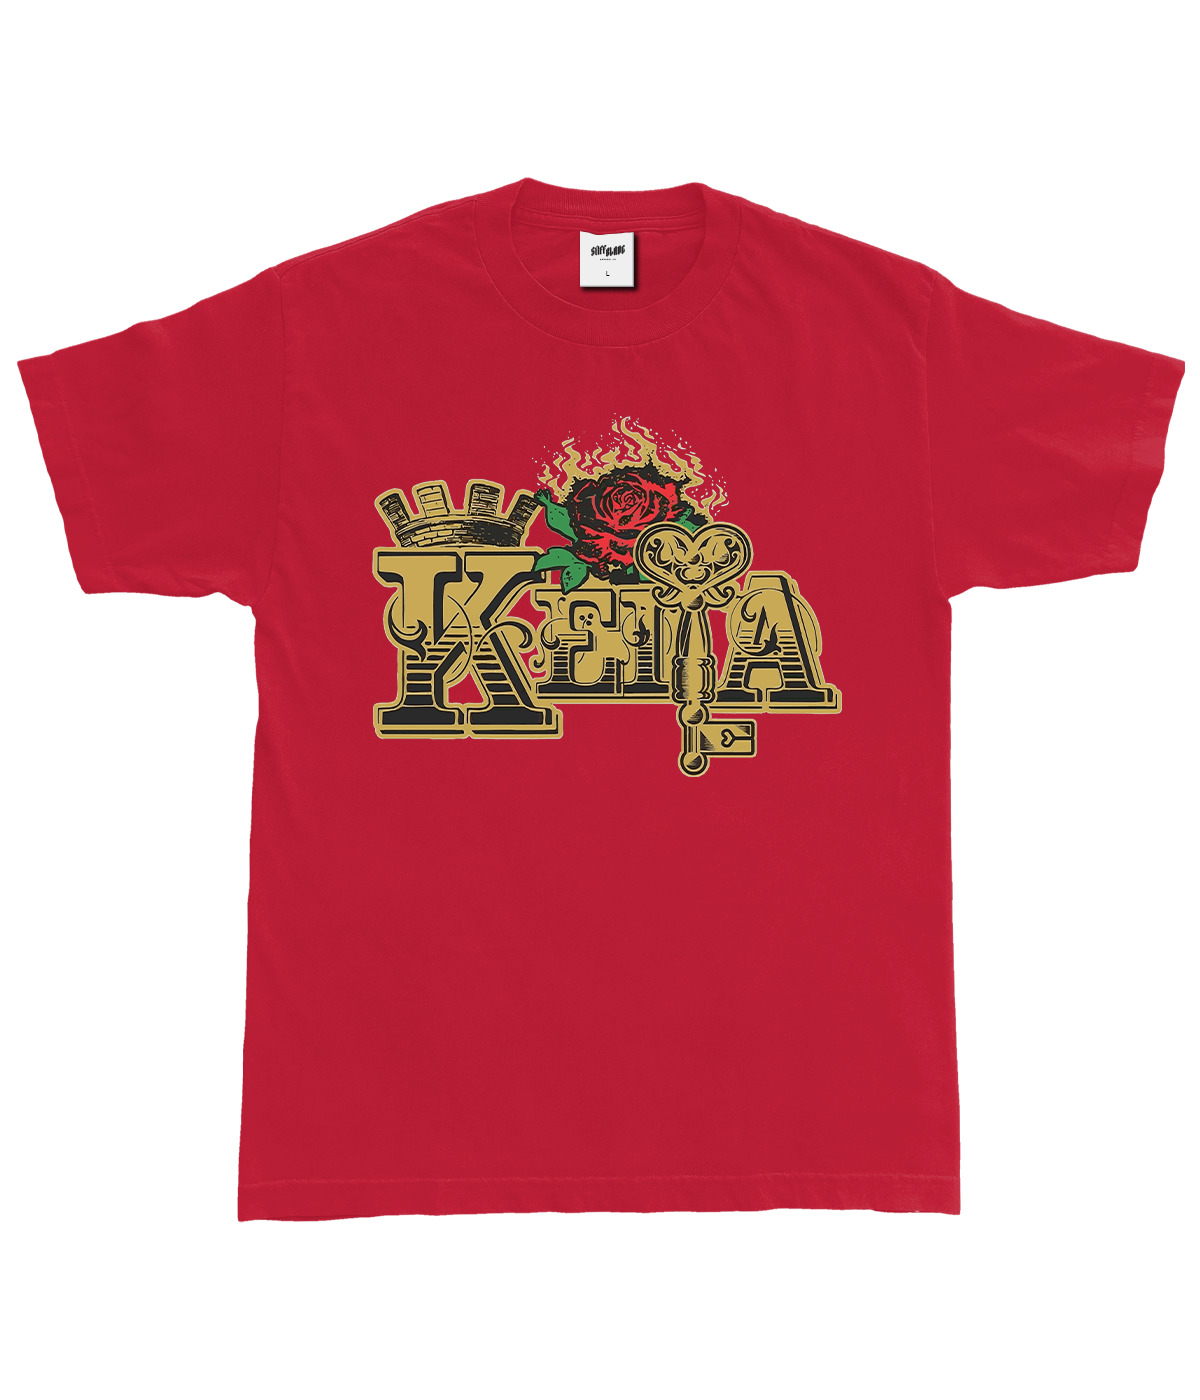 Keita - Logo Shirt